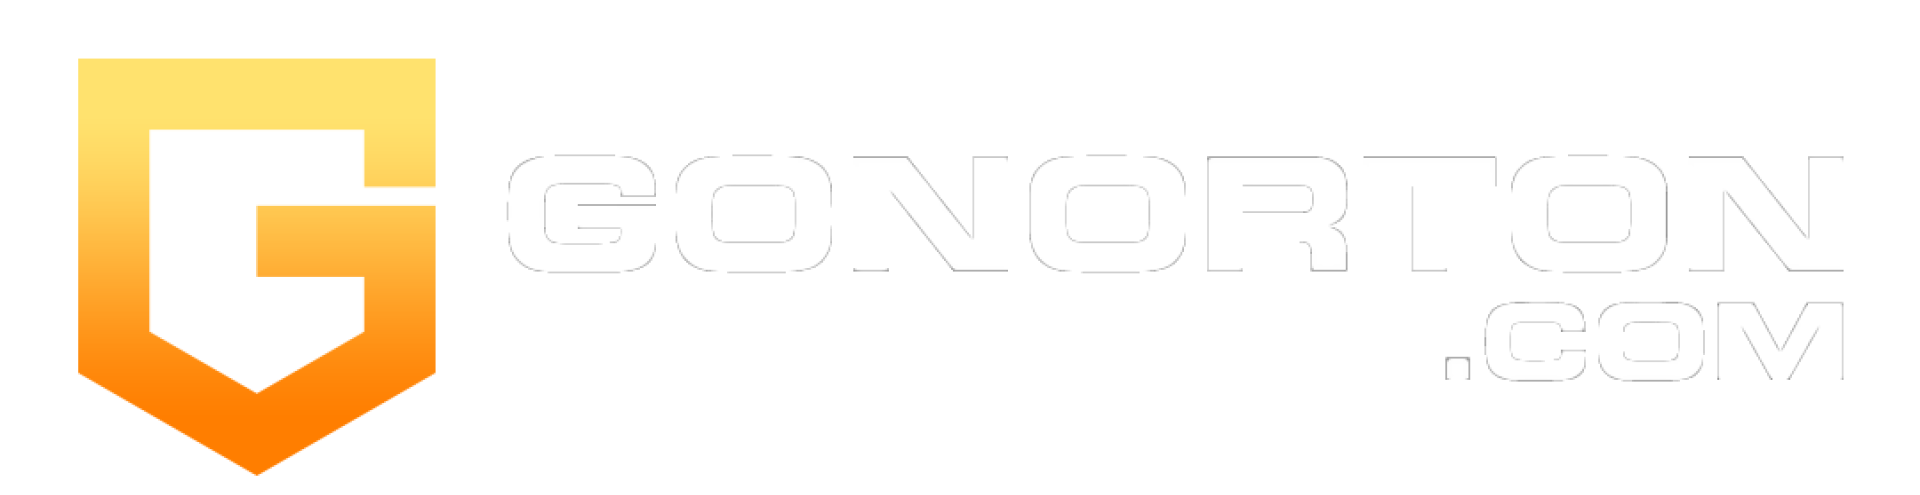 Gonorton Com | Informasi Lengkap Terbaru